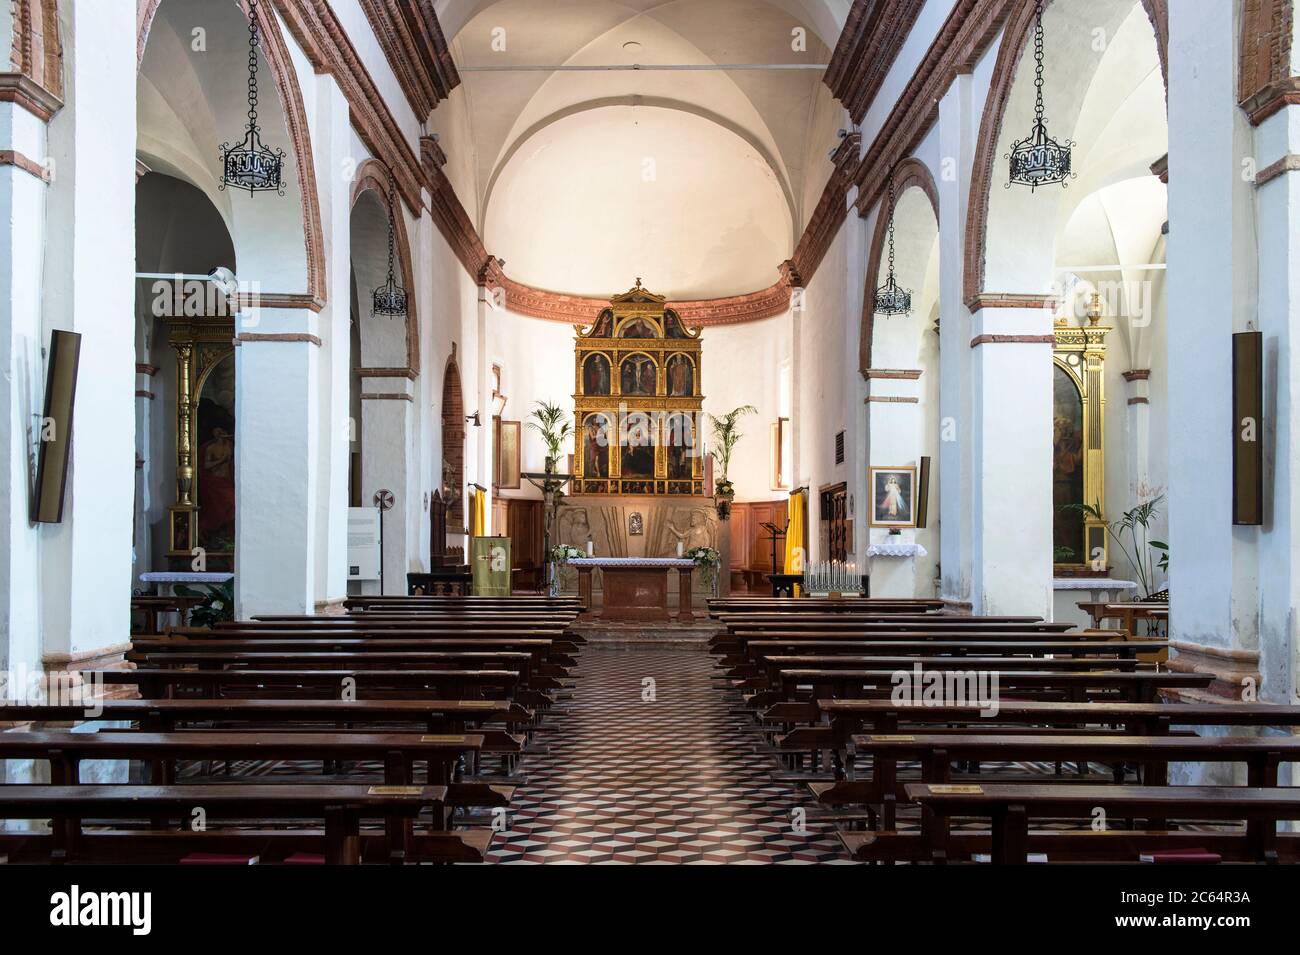 Italien, Lombardei, Castiglione d'Adda, Chiesa Incoronata Stockfoto